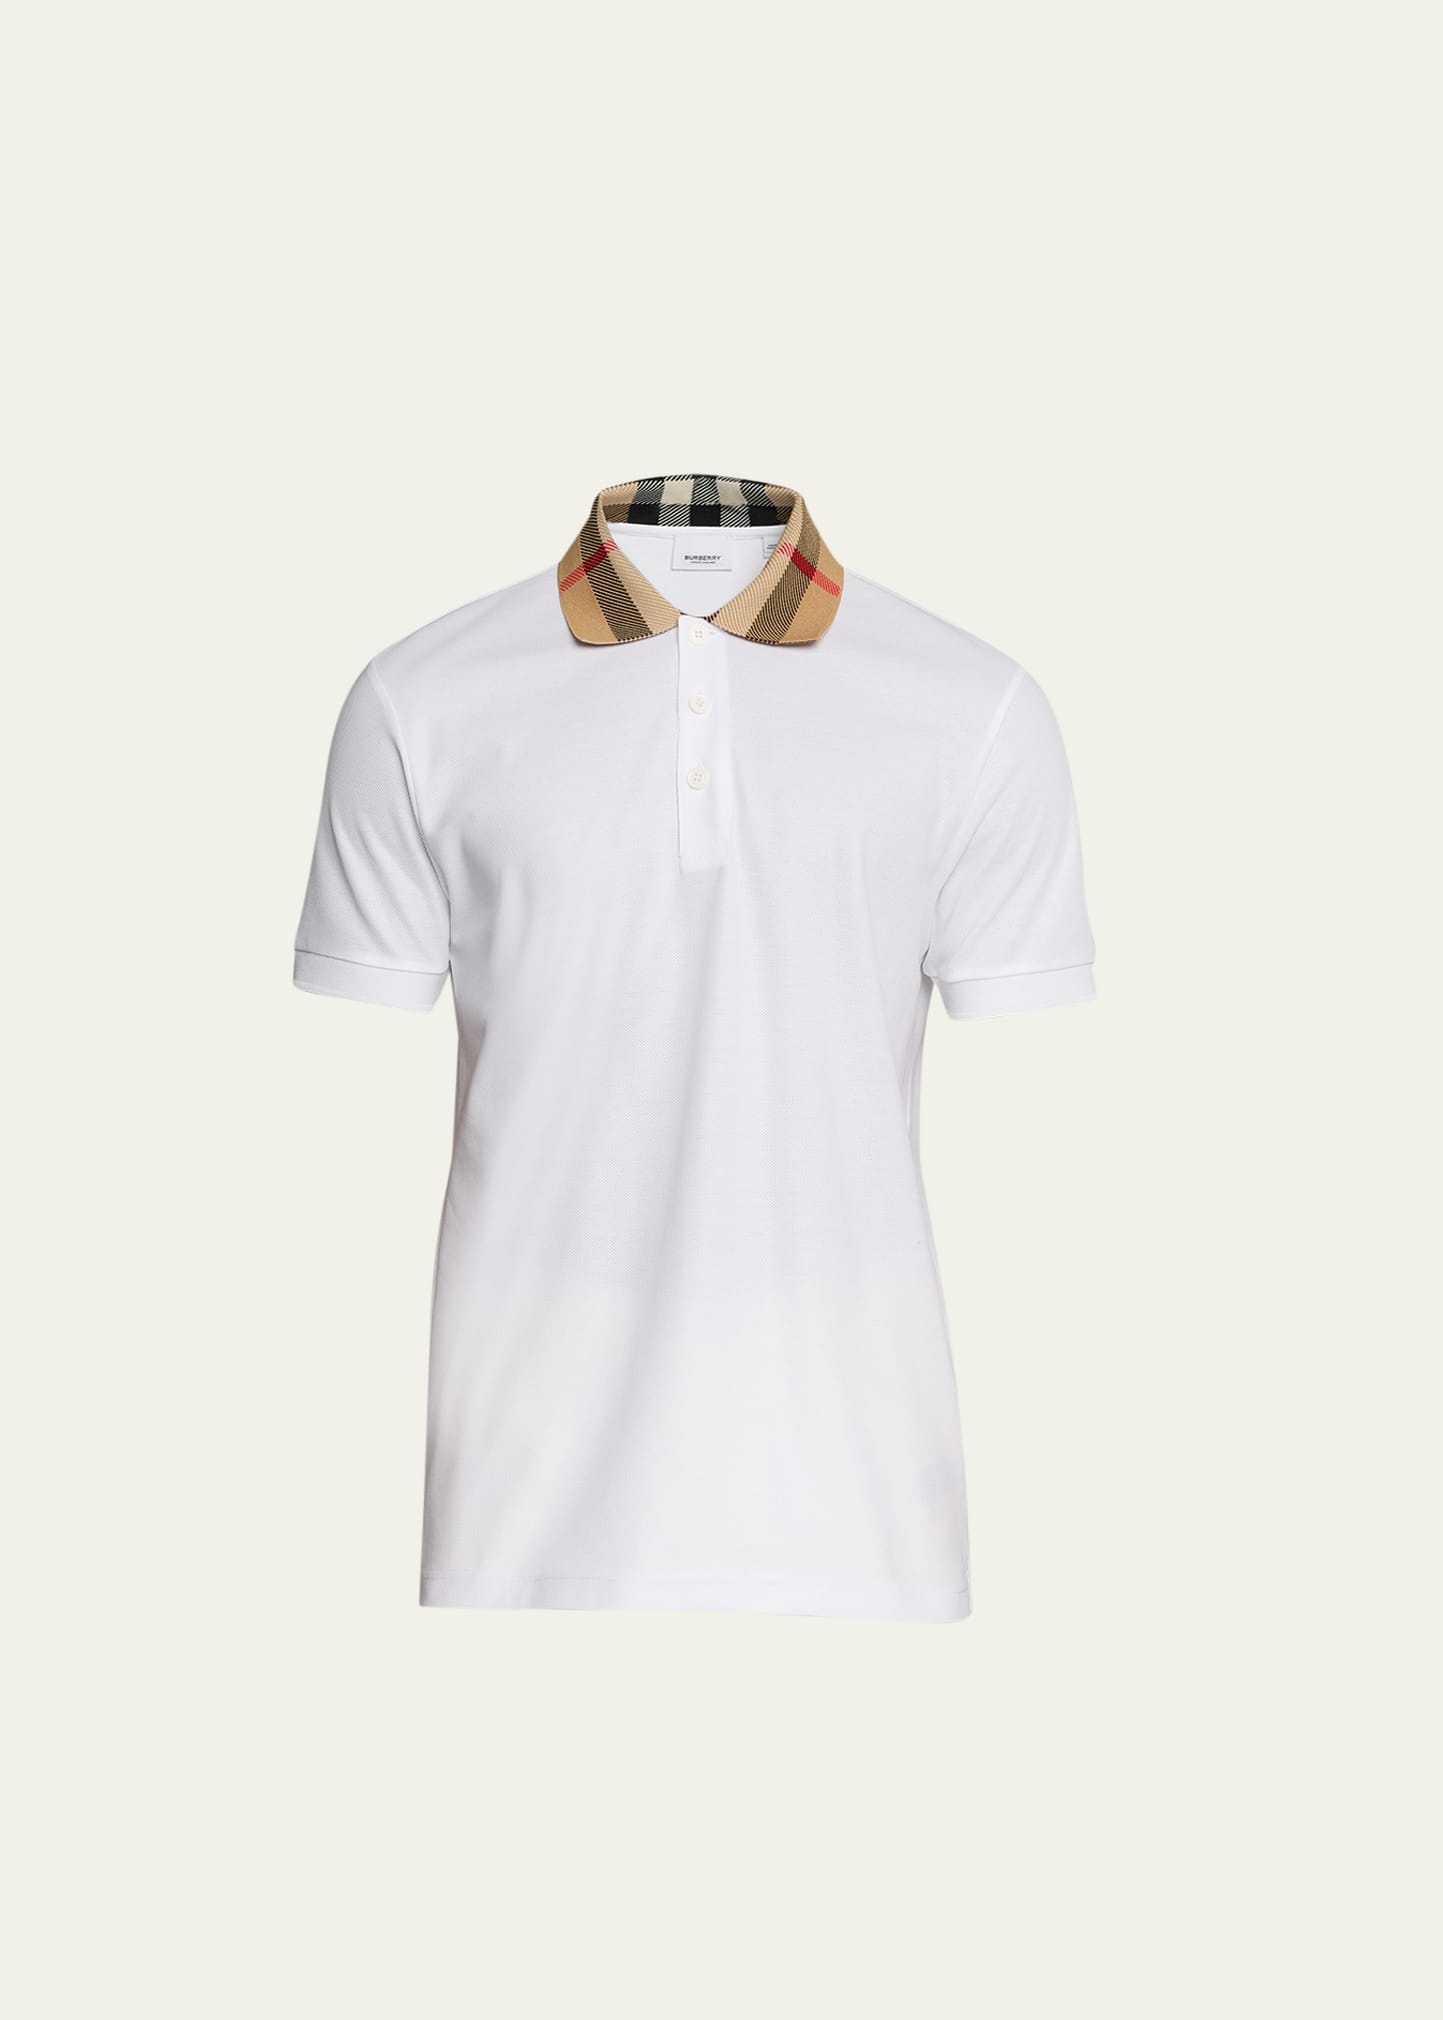 Men's Pique Polo Shirt with Check Collar - 1